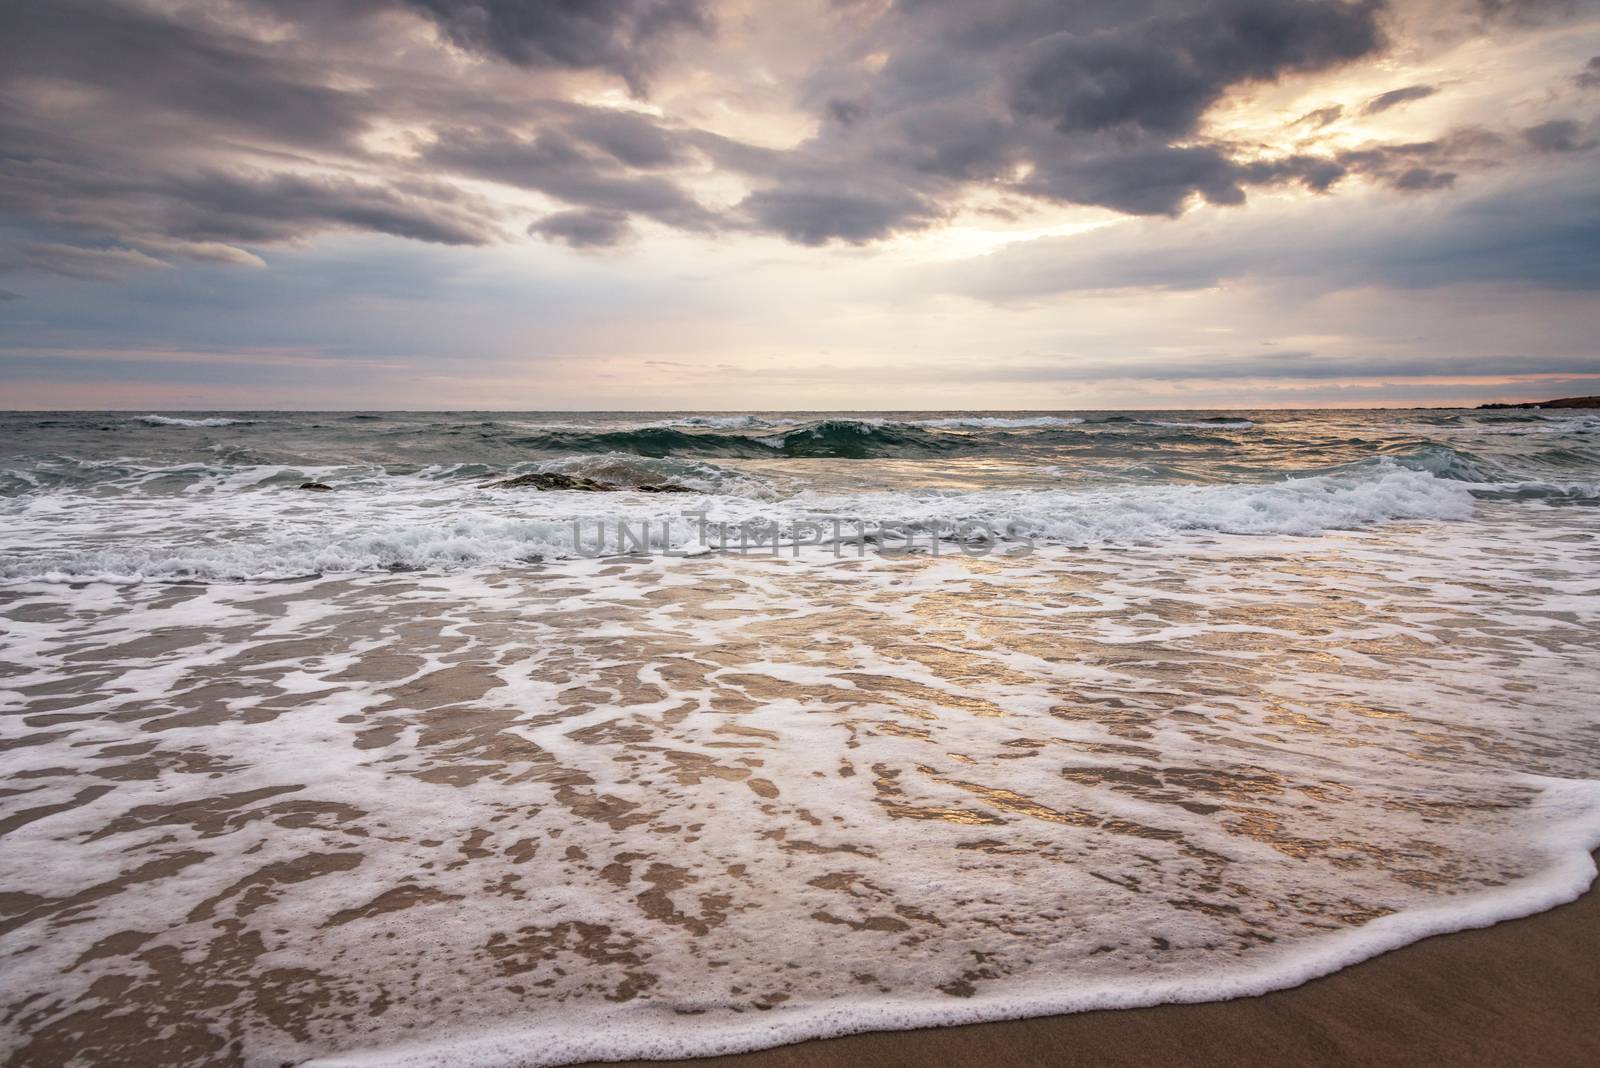 Waves at sunset at mediterranean sea.